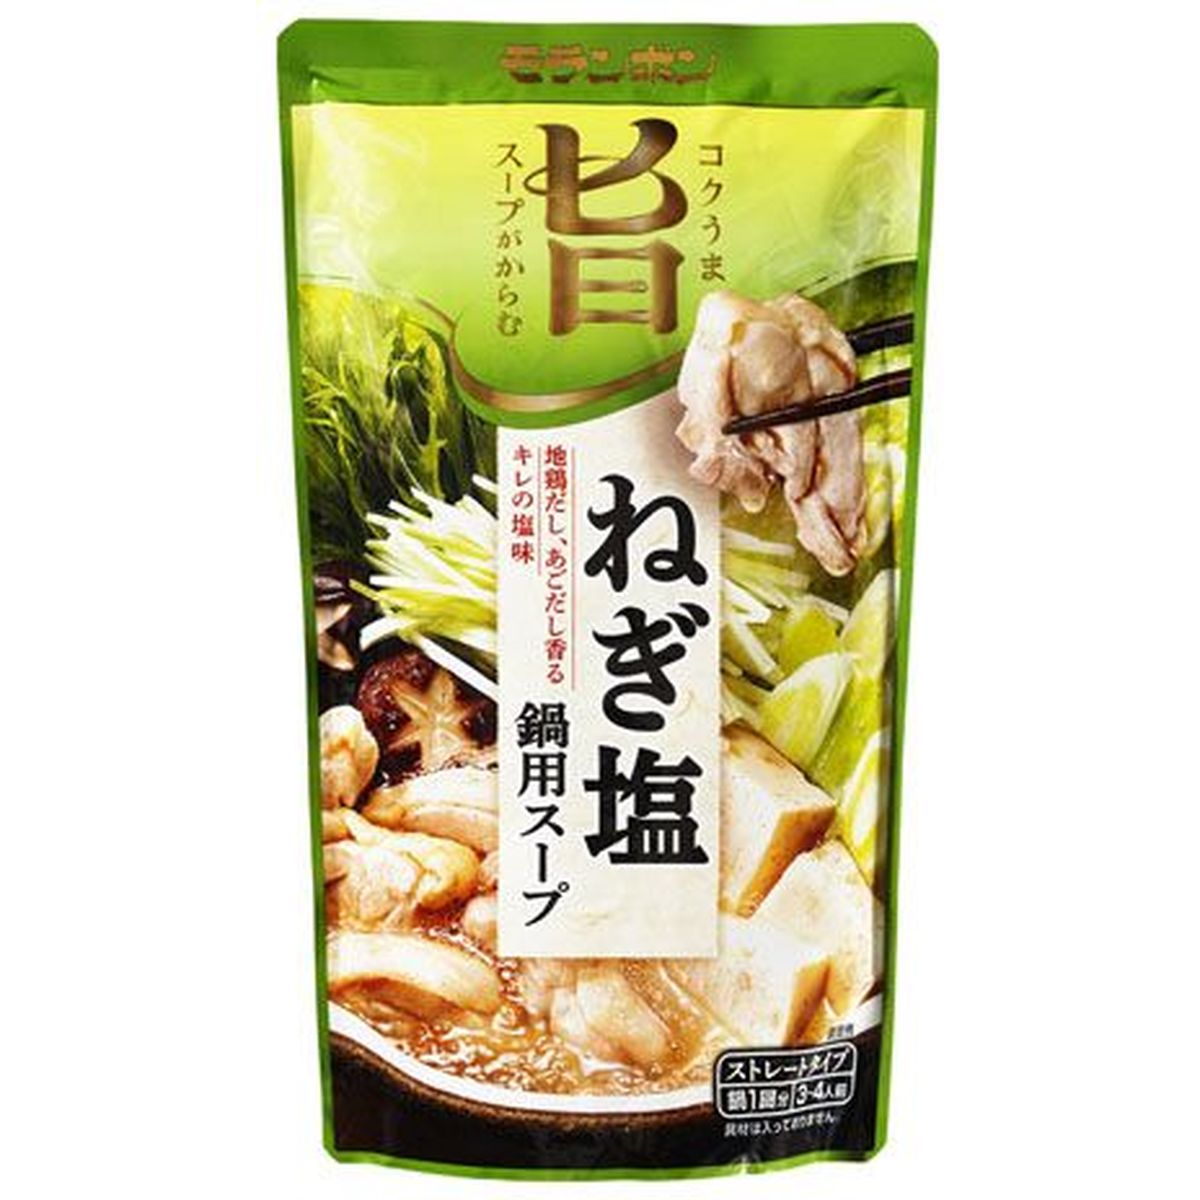 【10個入リ】モランボン コク旨カラム ネギ塩鍋スープ 750g